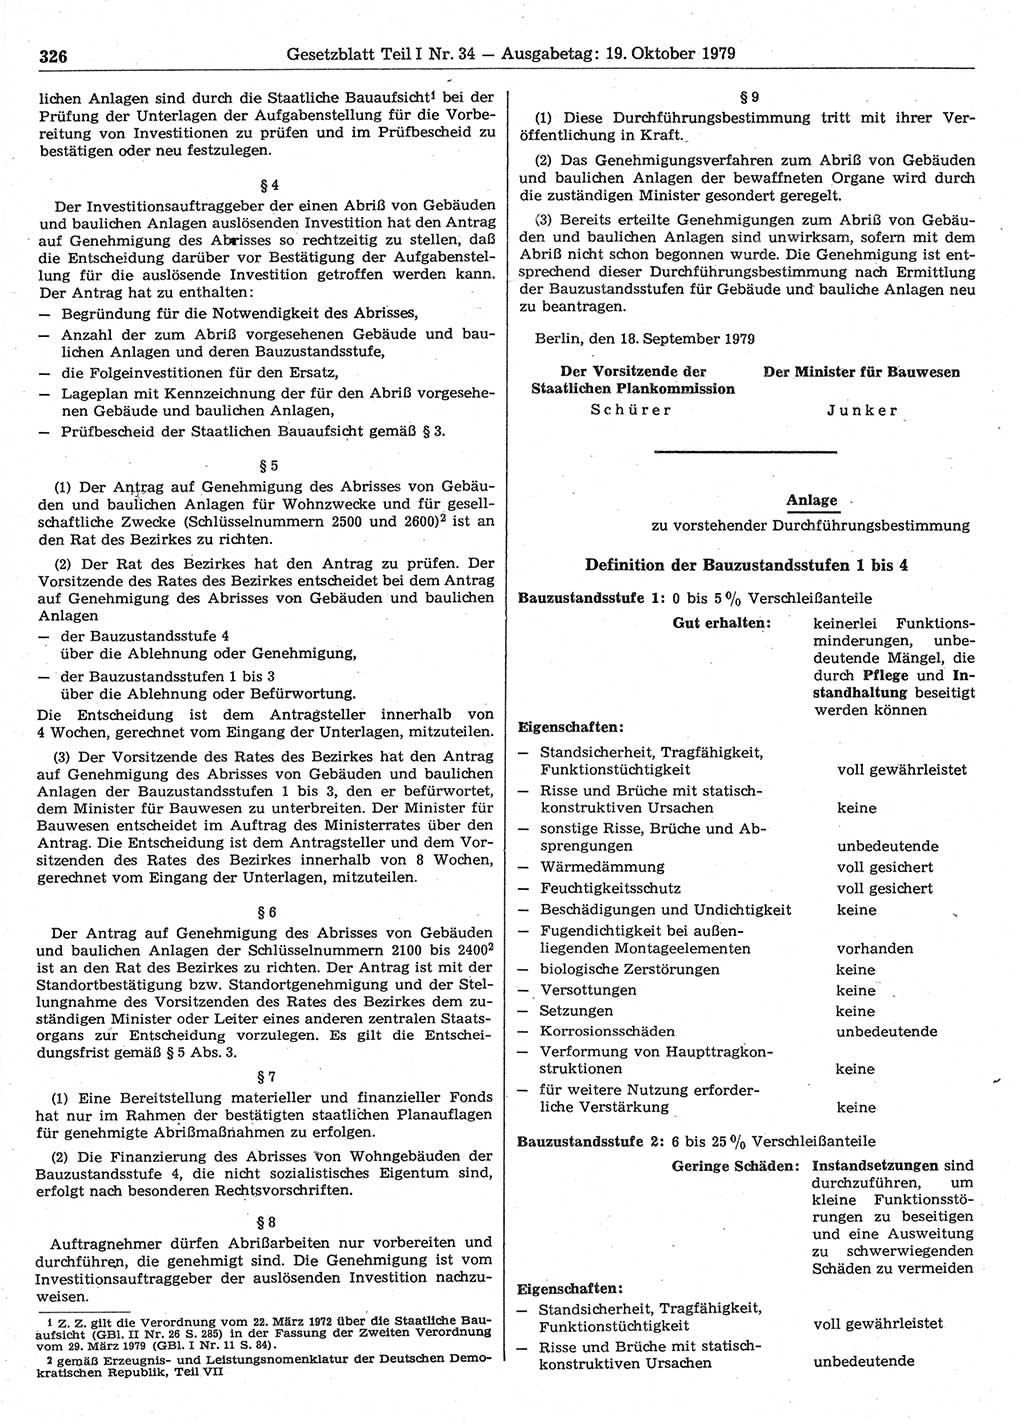 Gesetzblatt (GBl.) der Deutschen Demokratischen Republik (DDR) Teil Ⅰ 1979, Seite 326 (GBl. DDR Ⅰ 1979, S. 326)